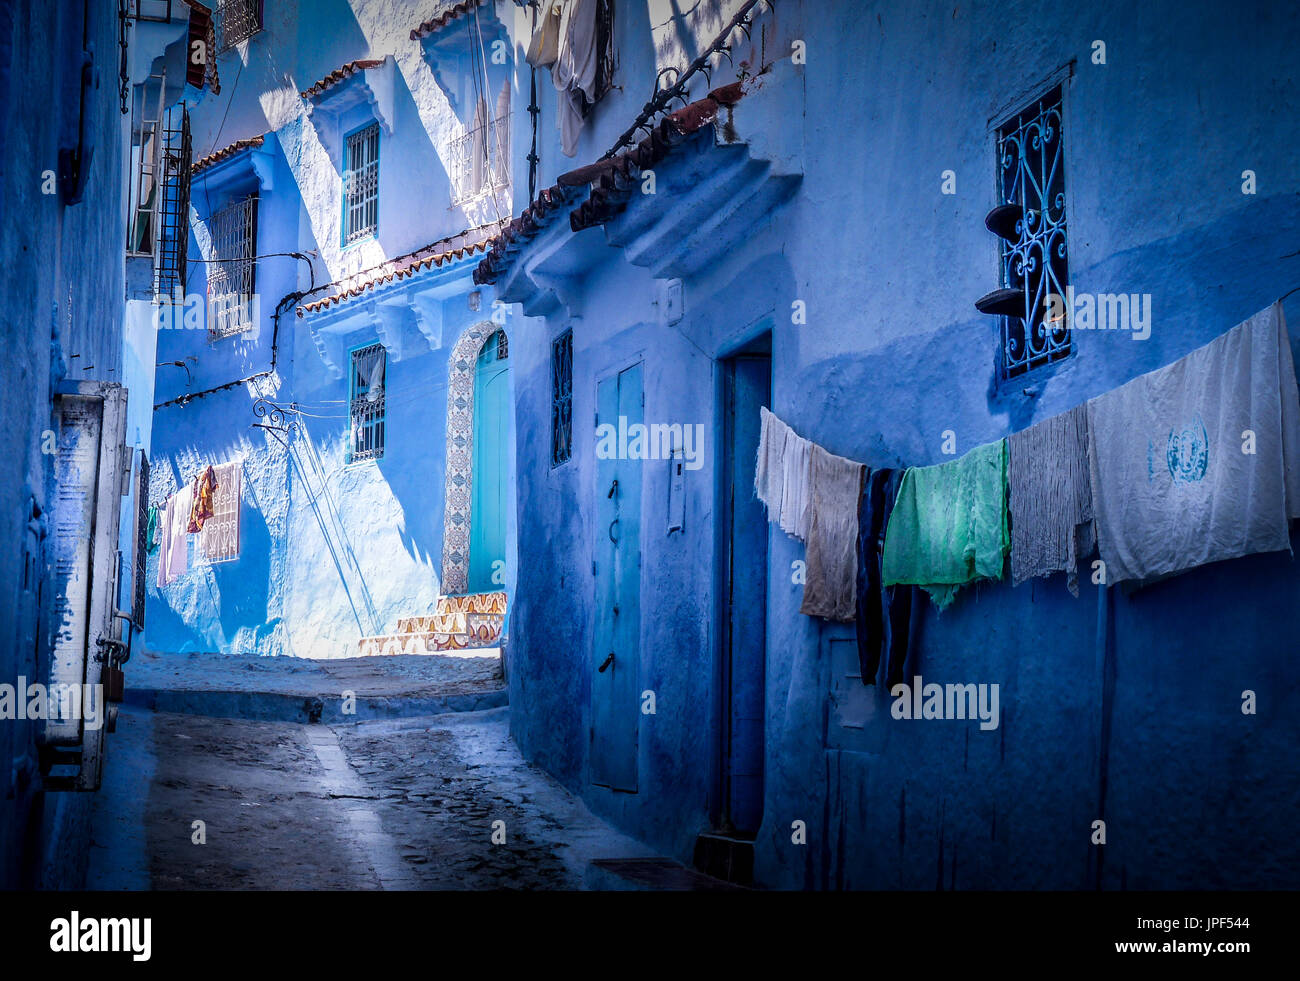 Avec sa palette de bleu et blanc, de bâtiments publics, la ville de Chefchaouen garde son sang froid dans une région très chaude au Maroc. Banque D'Images